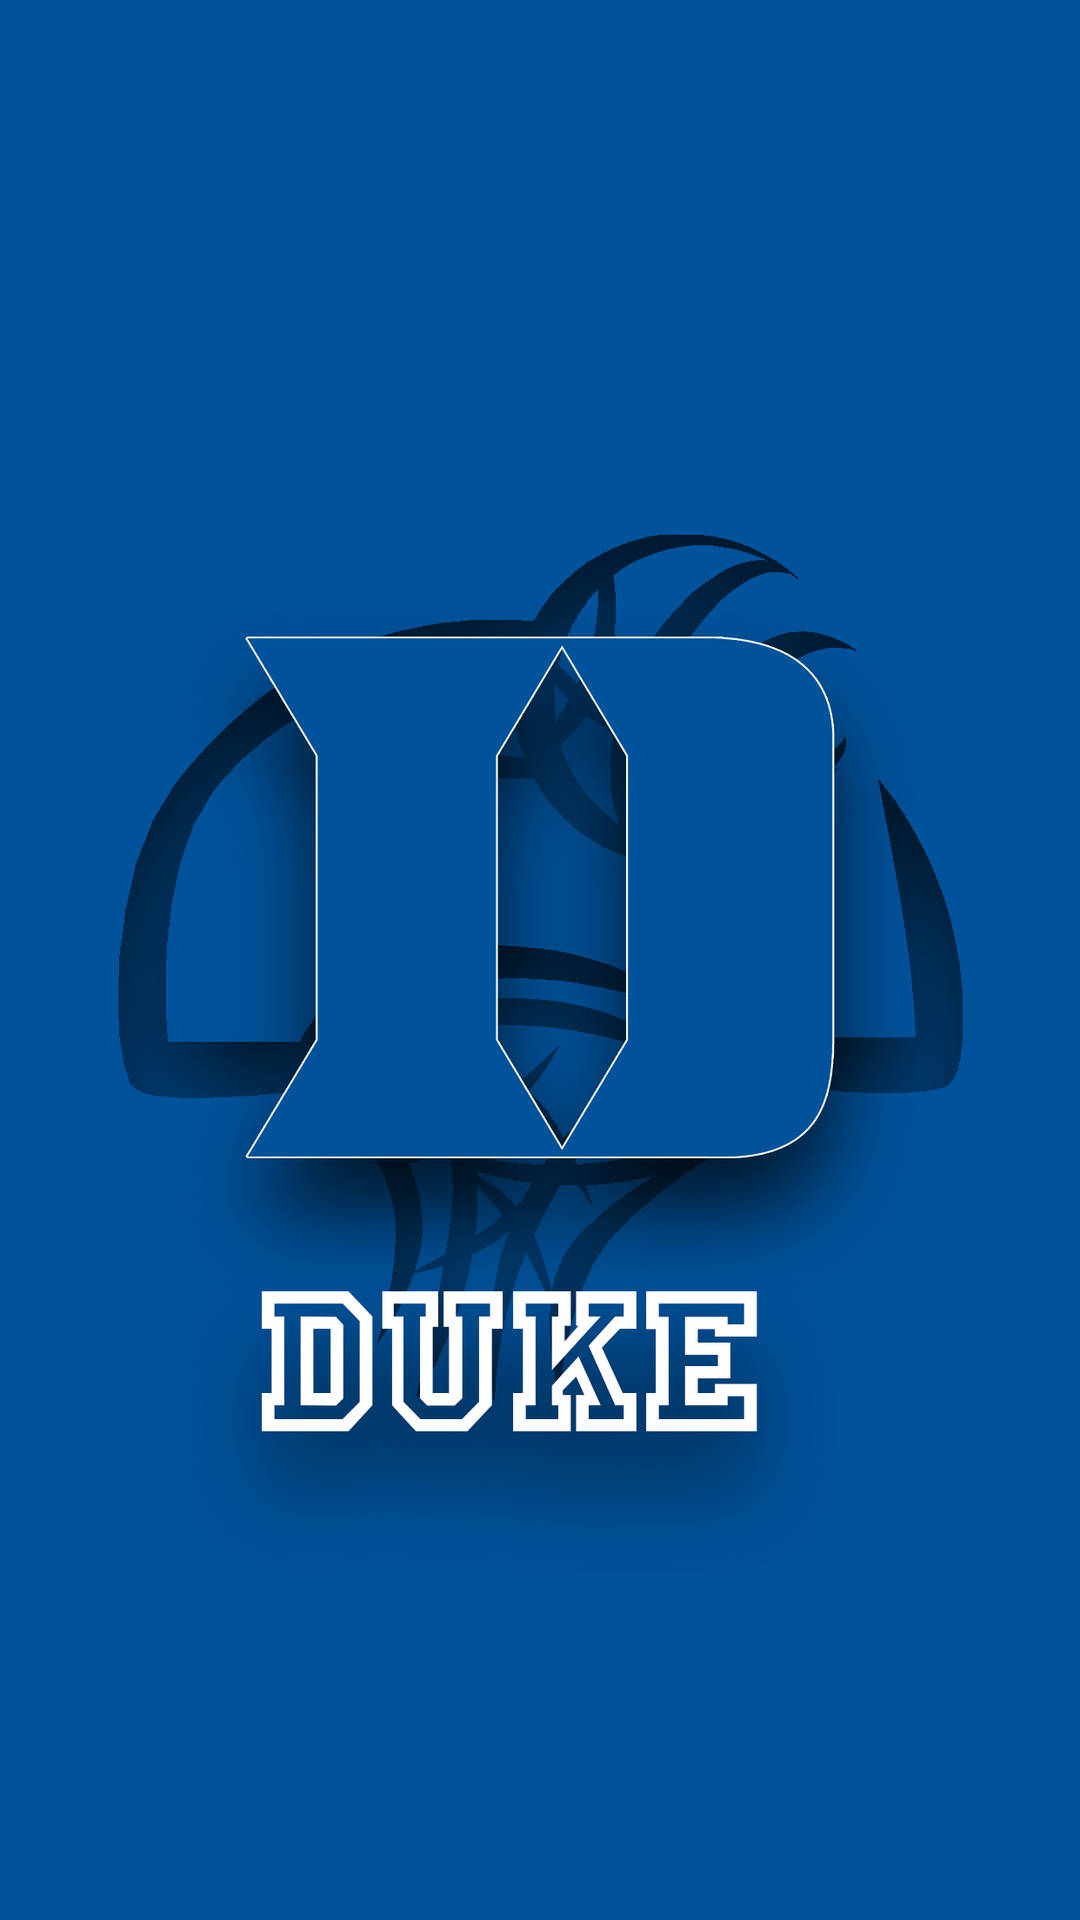 Duke Blue Devils Embossed Initial Logo Wallpaper